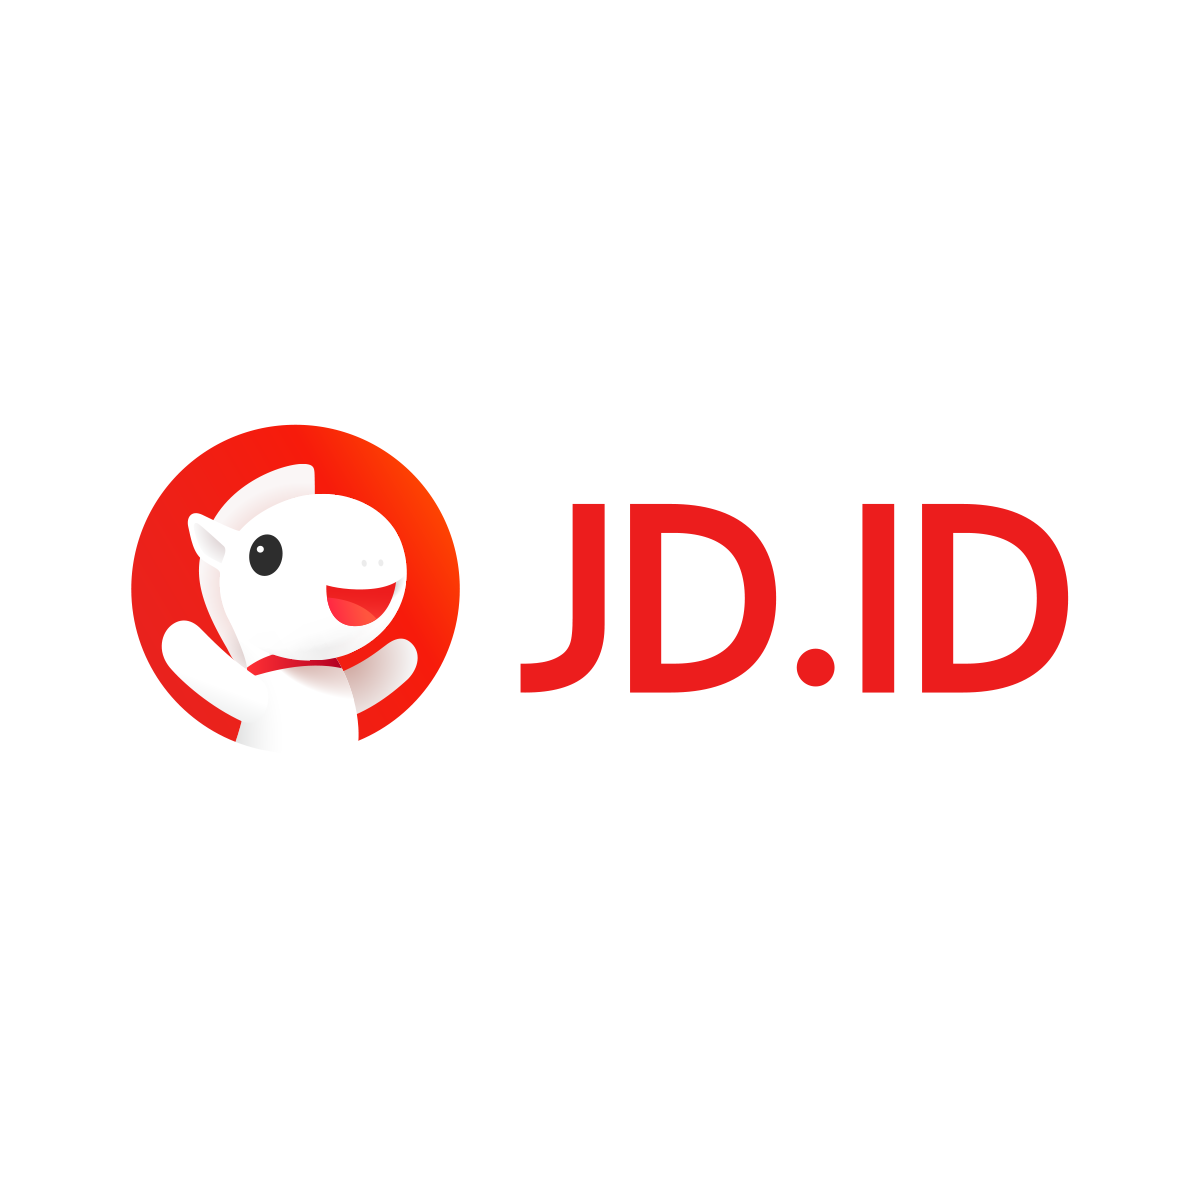 JD.ID Terancam Angkat Kaki dari Indonesia?